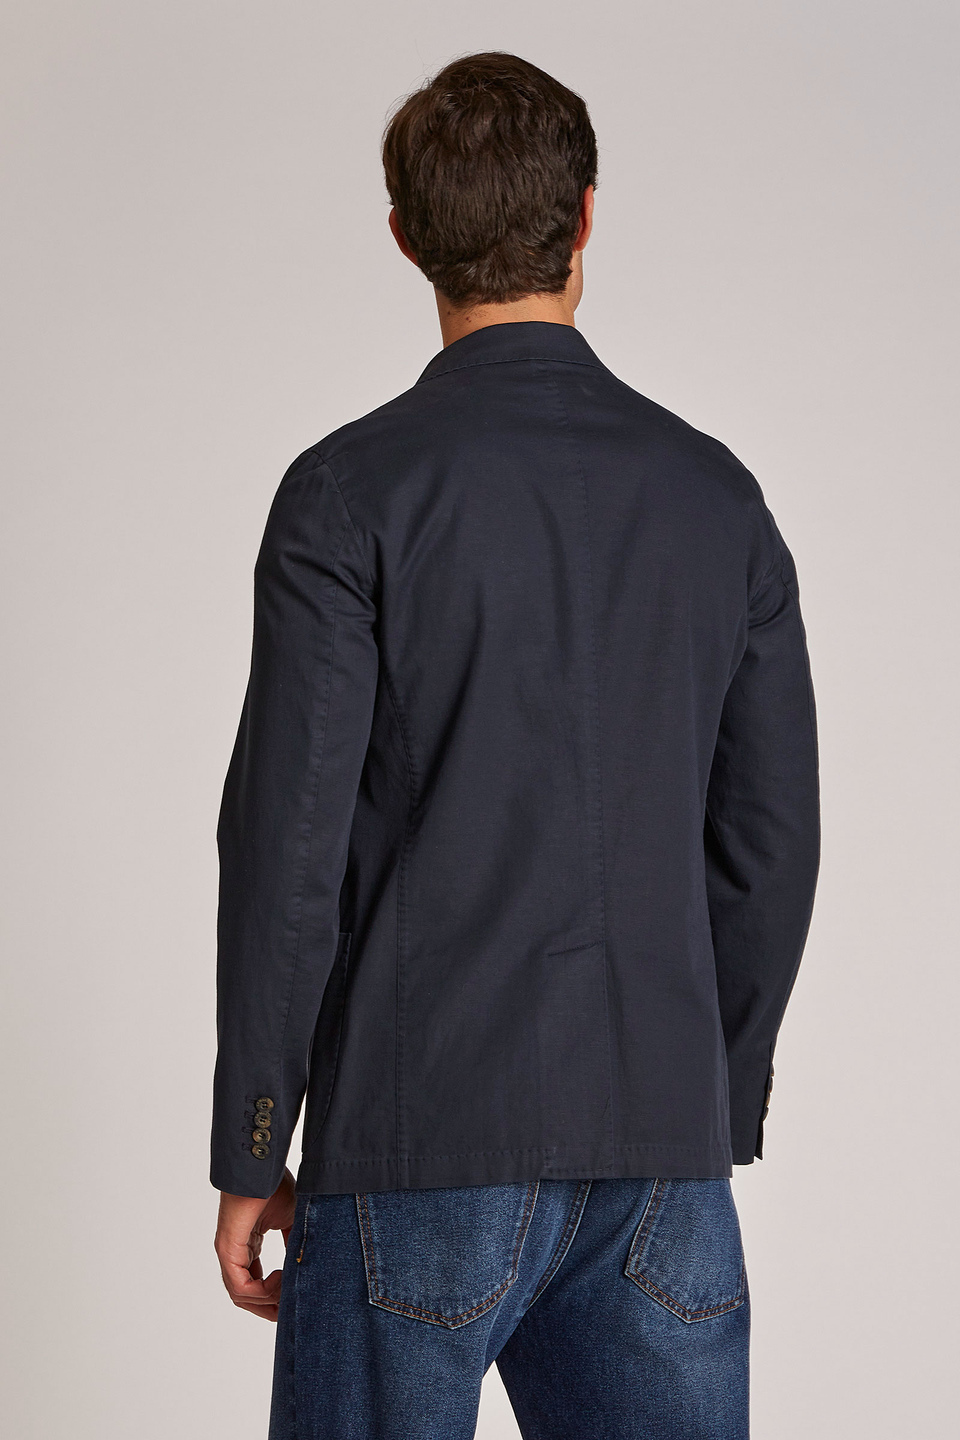 Veste homme style blazer en mélange de coton et lin coupe classique - La Martina - Official Online Shop